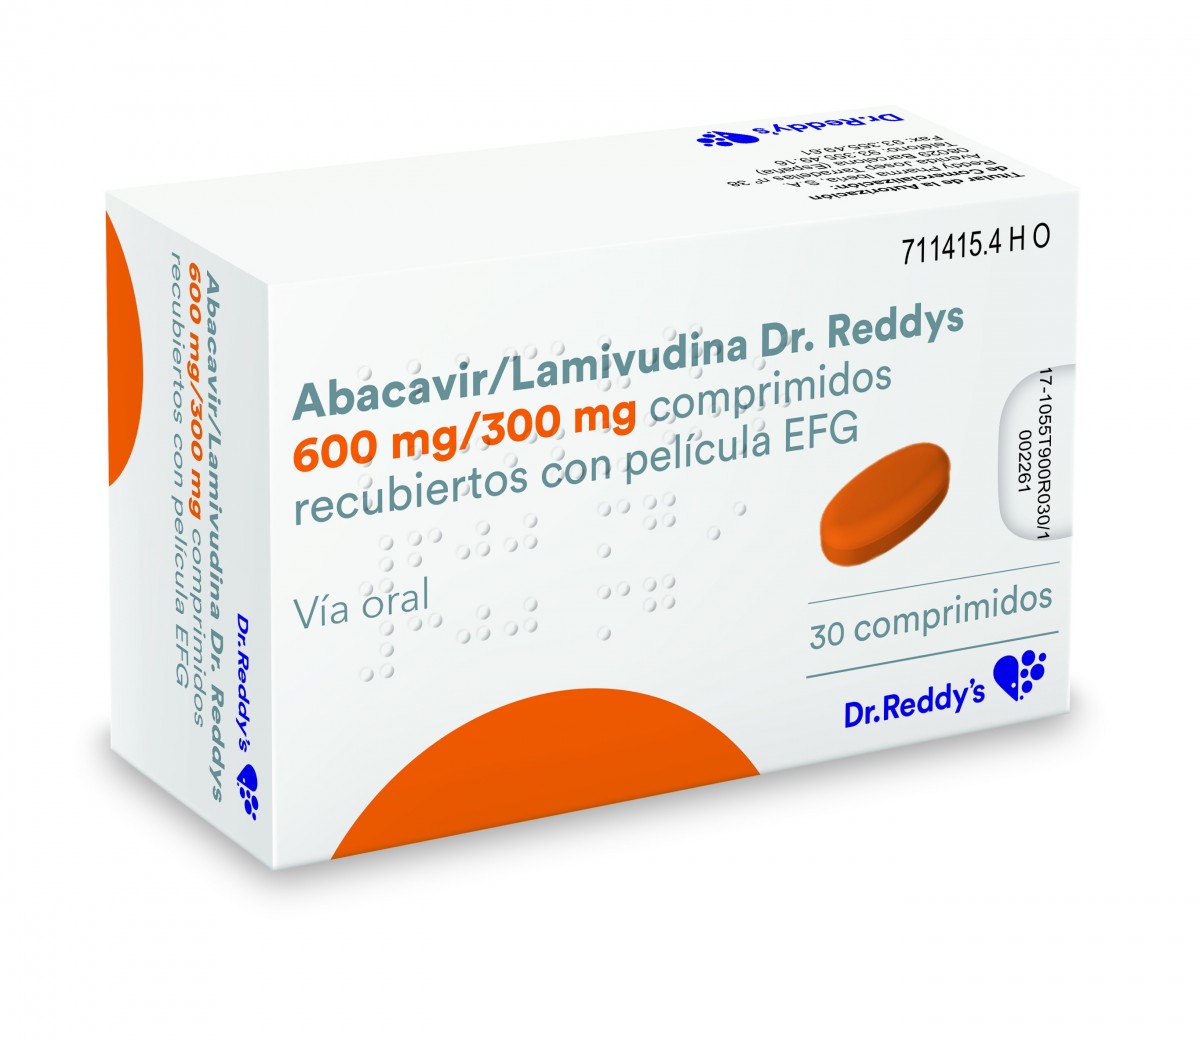 ABACAVIR/LAMIVUDINA  DR. REDDYS 600 MG/300 MG COMPRIMIDOS RECUBIERTOS CON PELICULA EFG 30 comprimidos fotografía del envase.